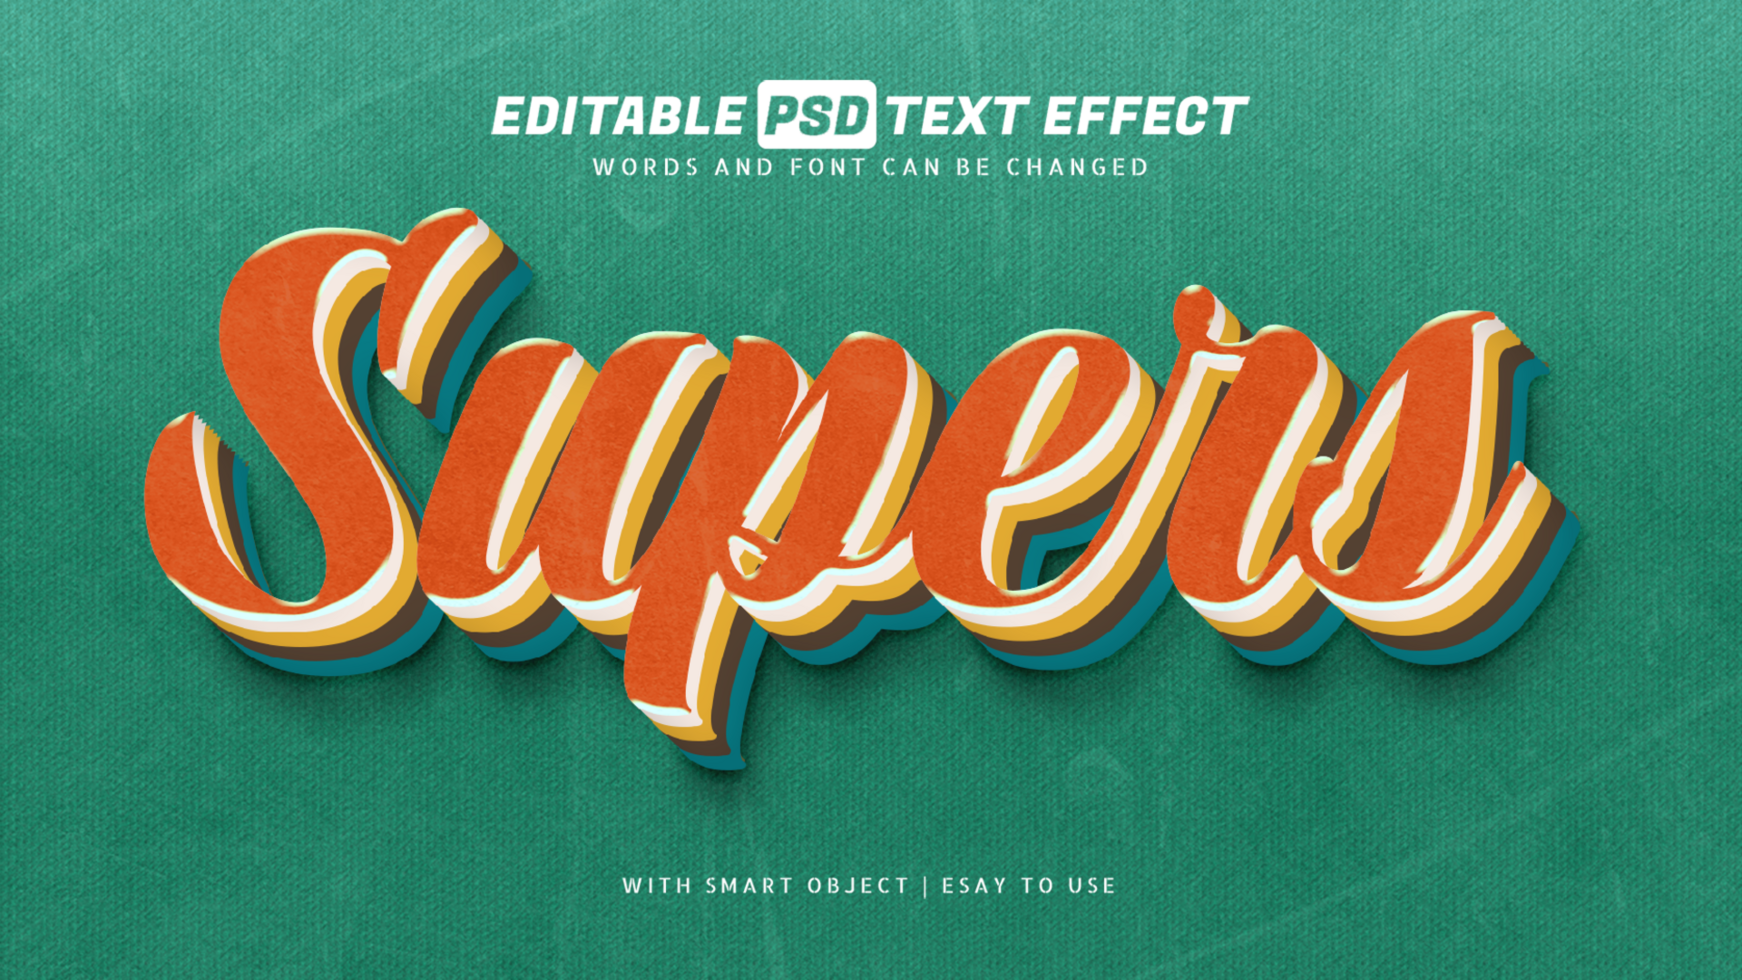 Super retro vintage 3d text effect editable psd